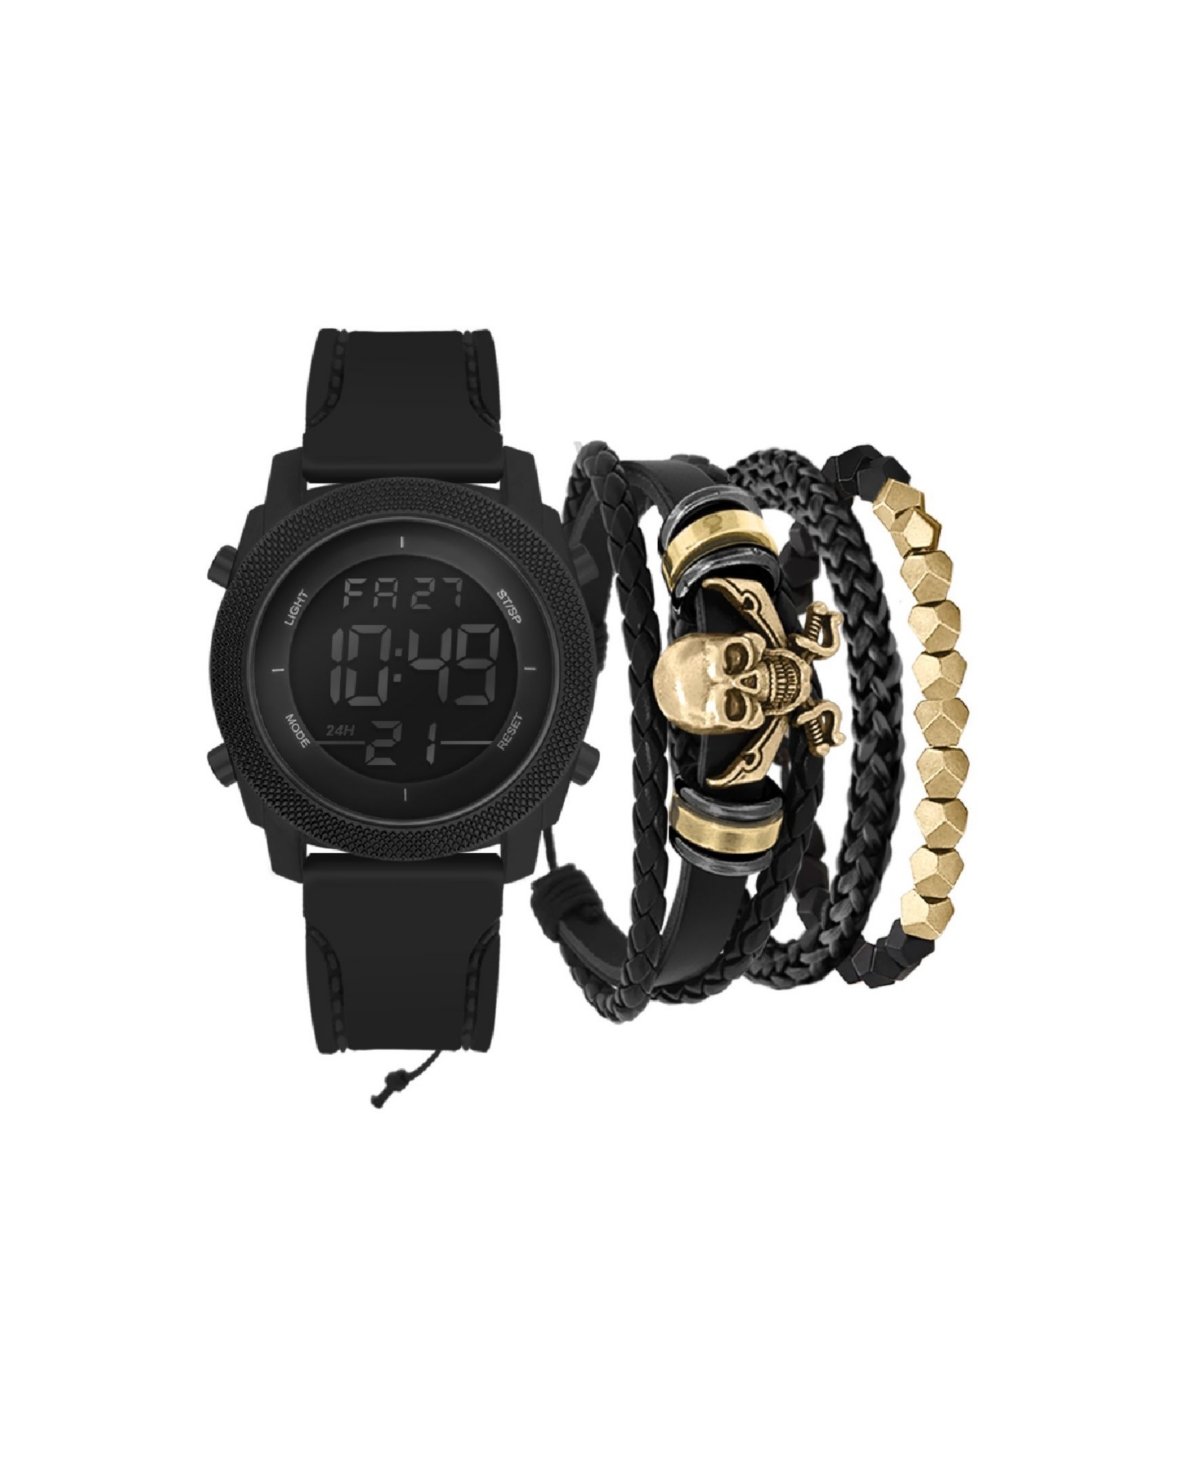 Men's Black Silicone Strap Watch 46mm Gift Set, 2 Piece - Black